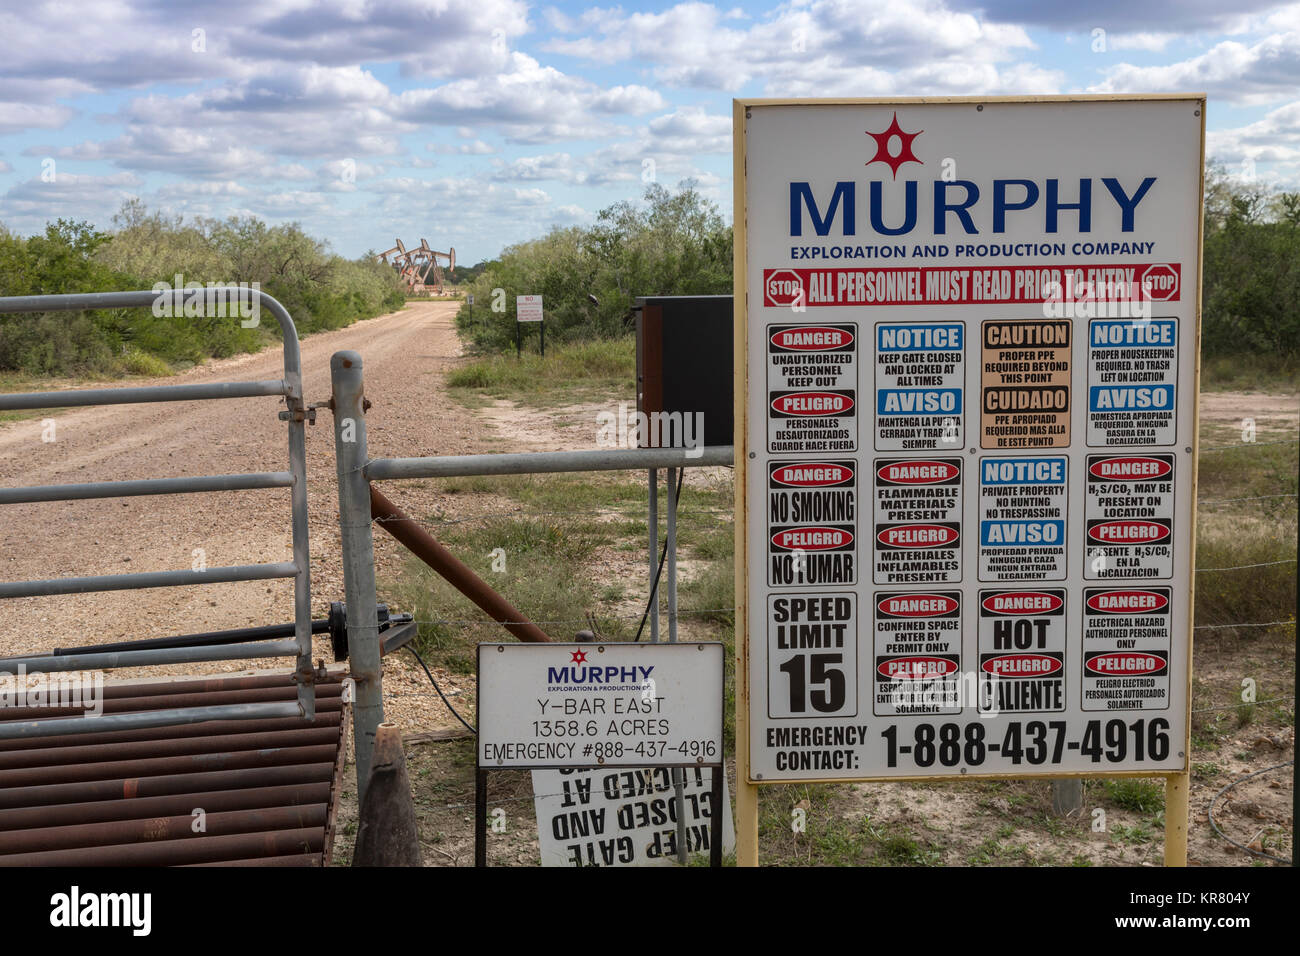 Fowlerton, Texas - un signe avis listes tout le personnel doit lire avant d'entrer dans un site de production d'huile. Banque D'Images